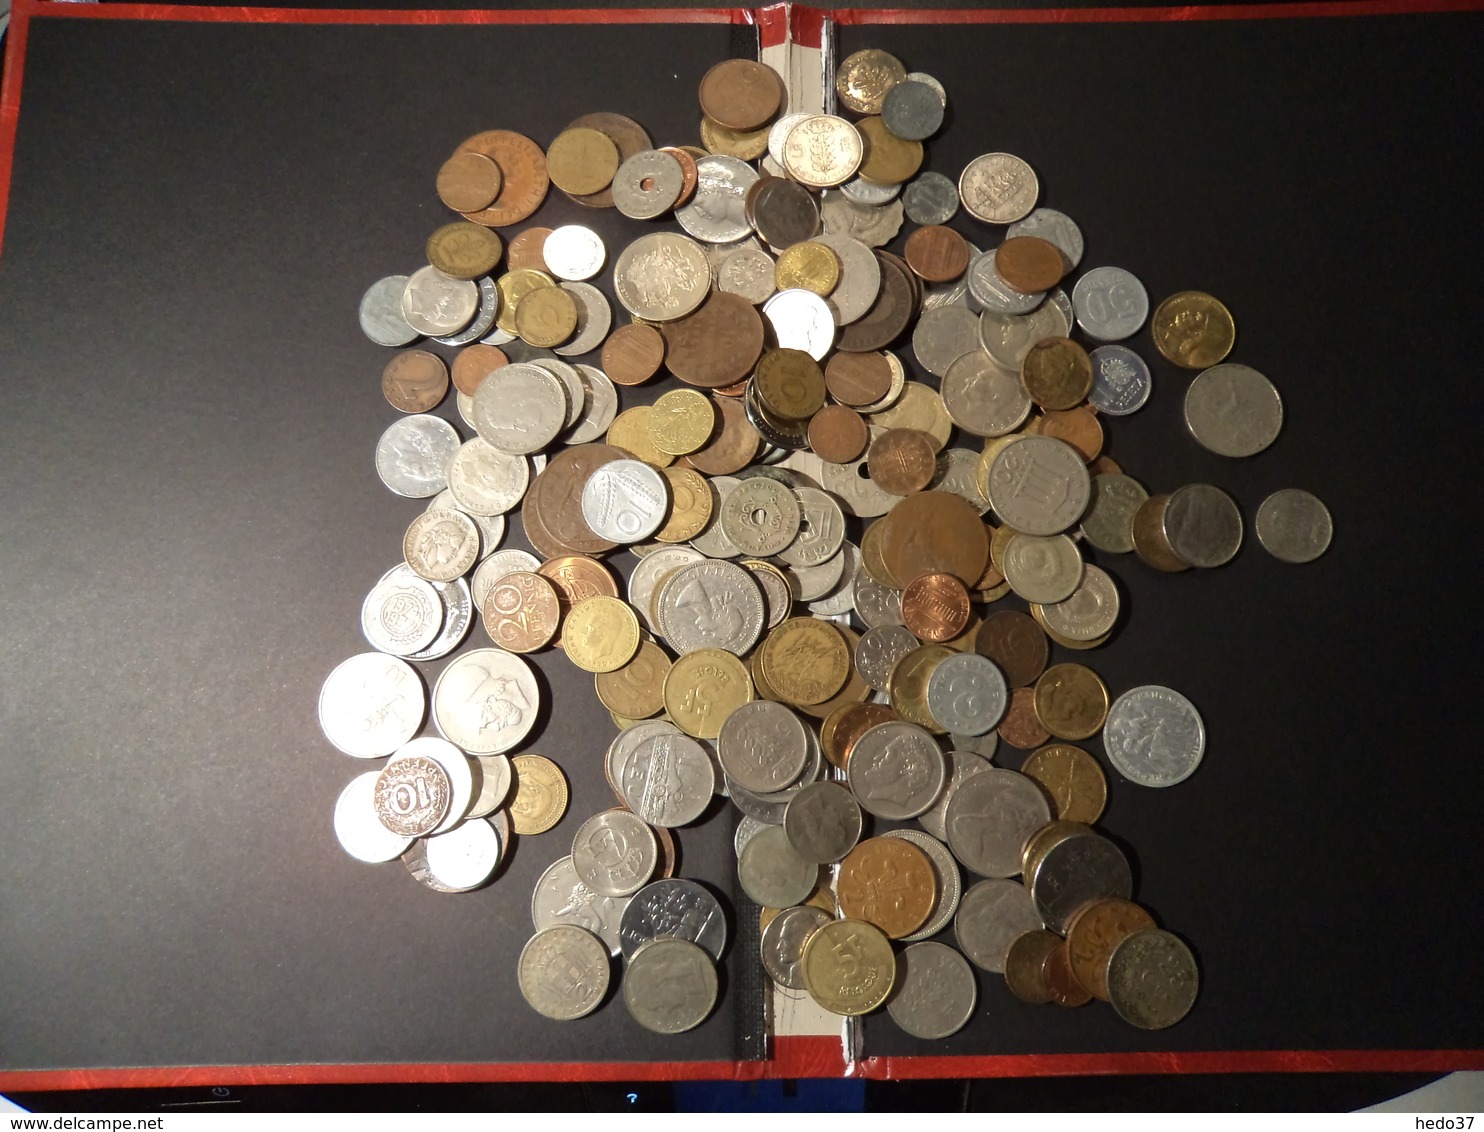 1 Kilo - Monnaies Tous Pays à Trier - Lots & Kiloware - Coins